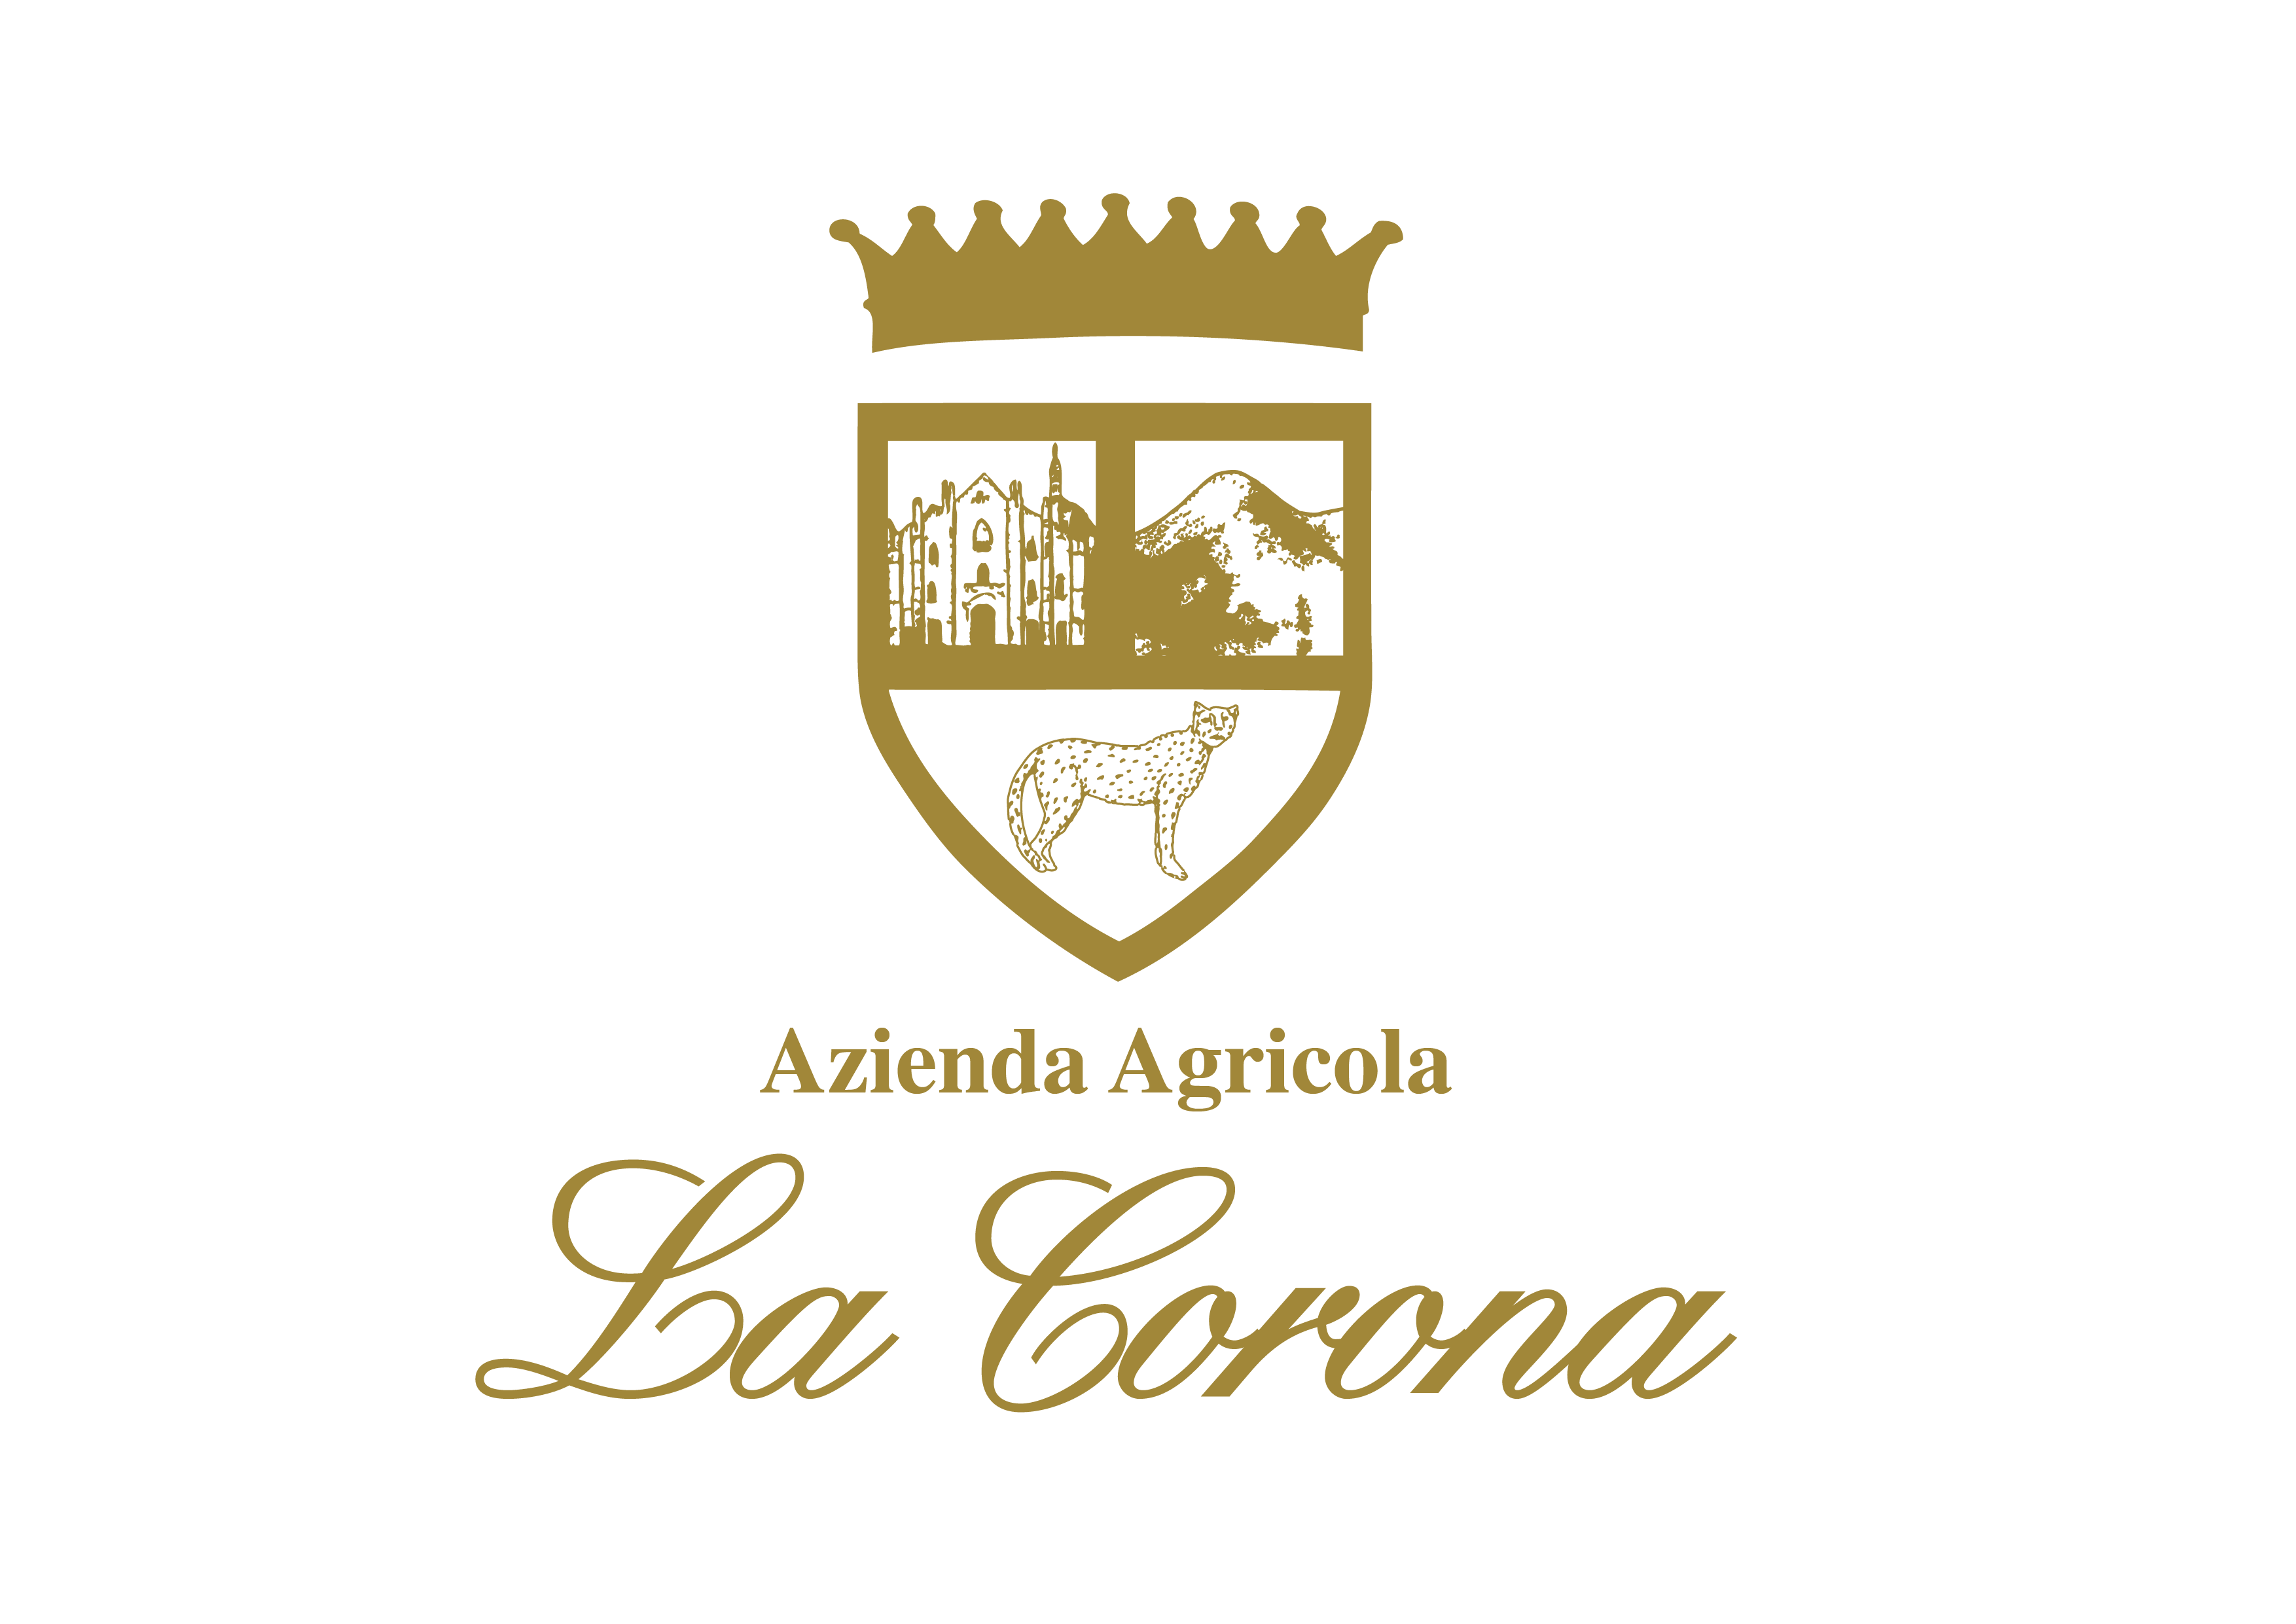 A. A. La Corona - TRIS LA CORONA su Dilloconilvino.it